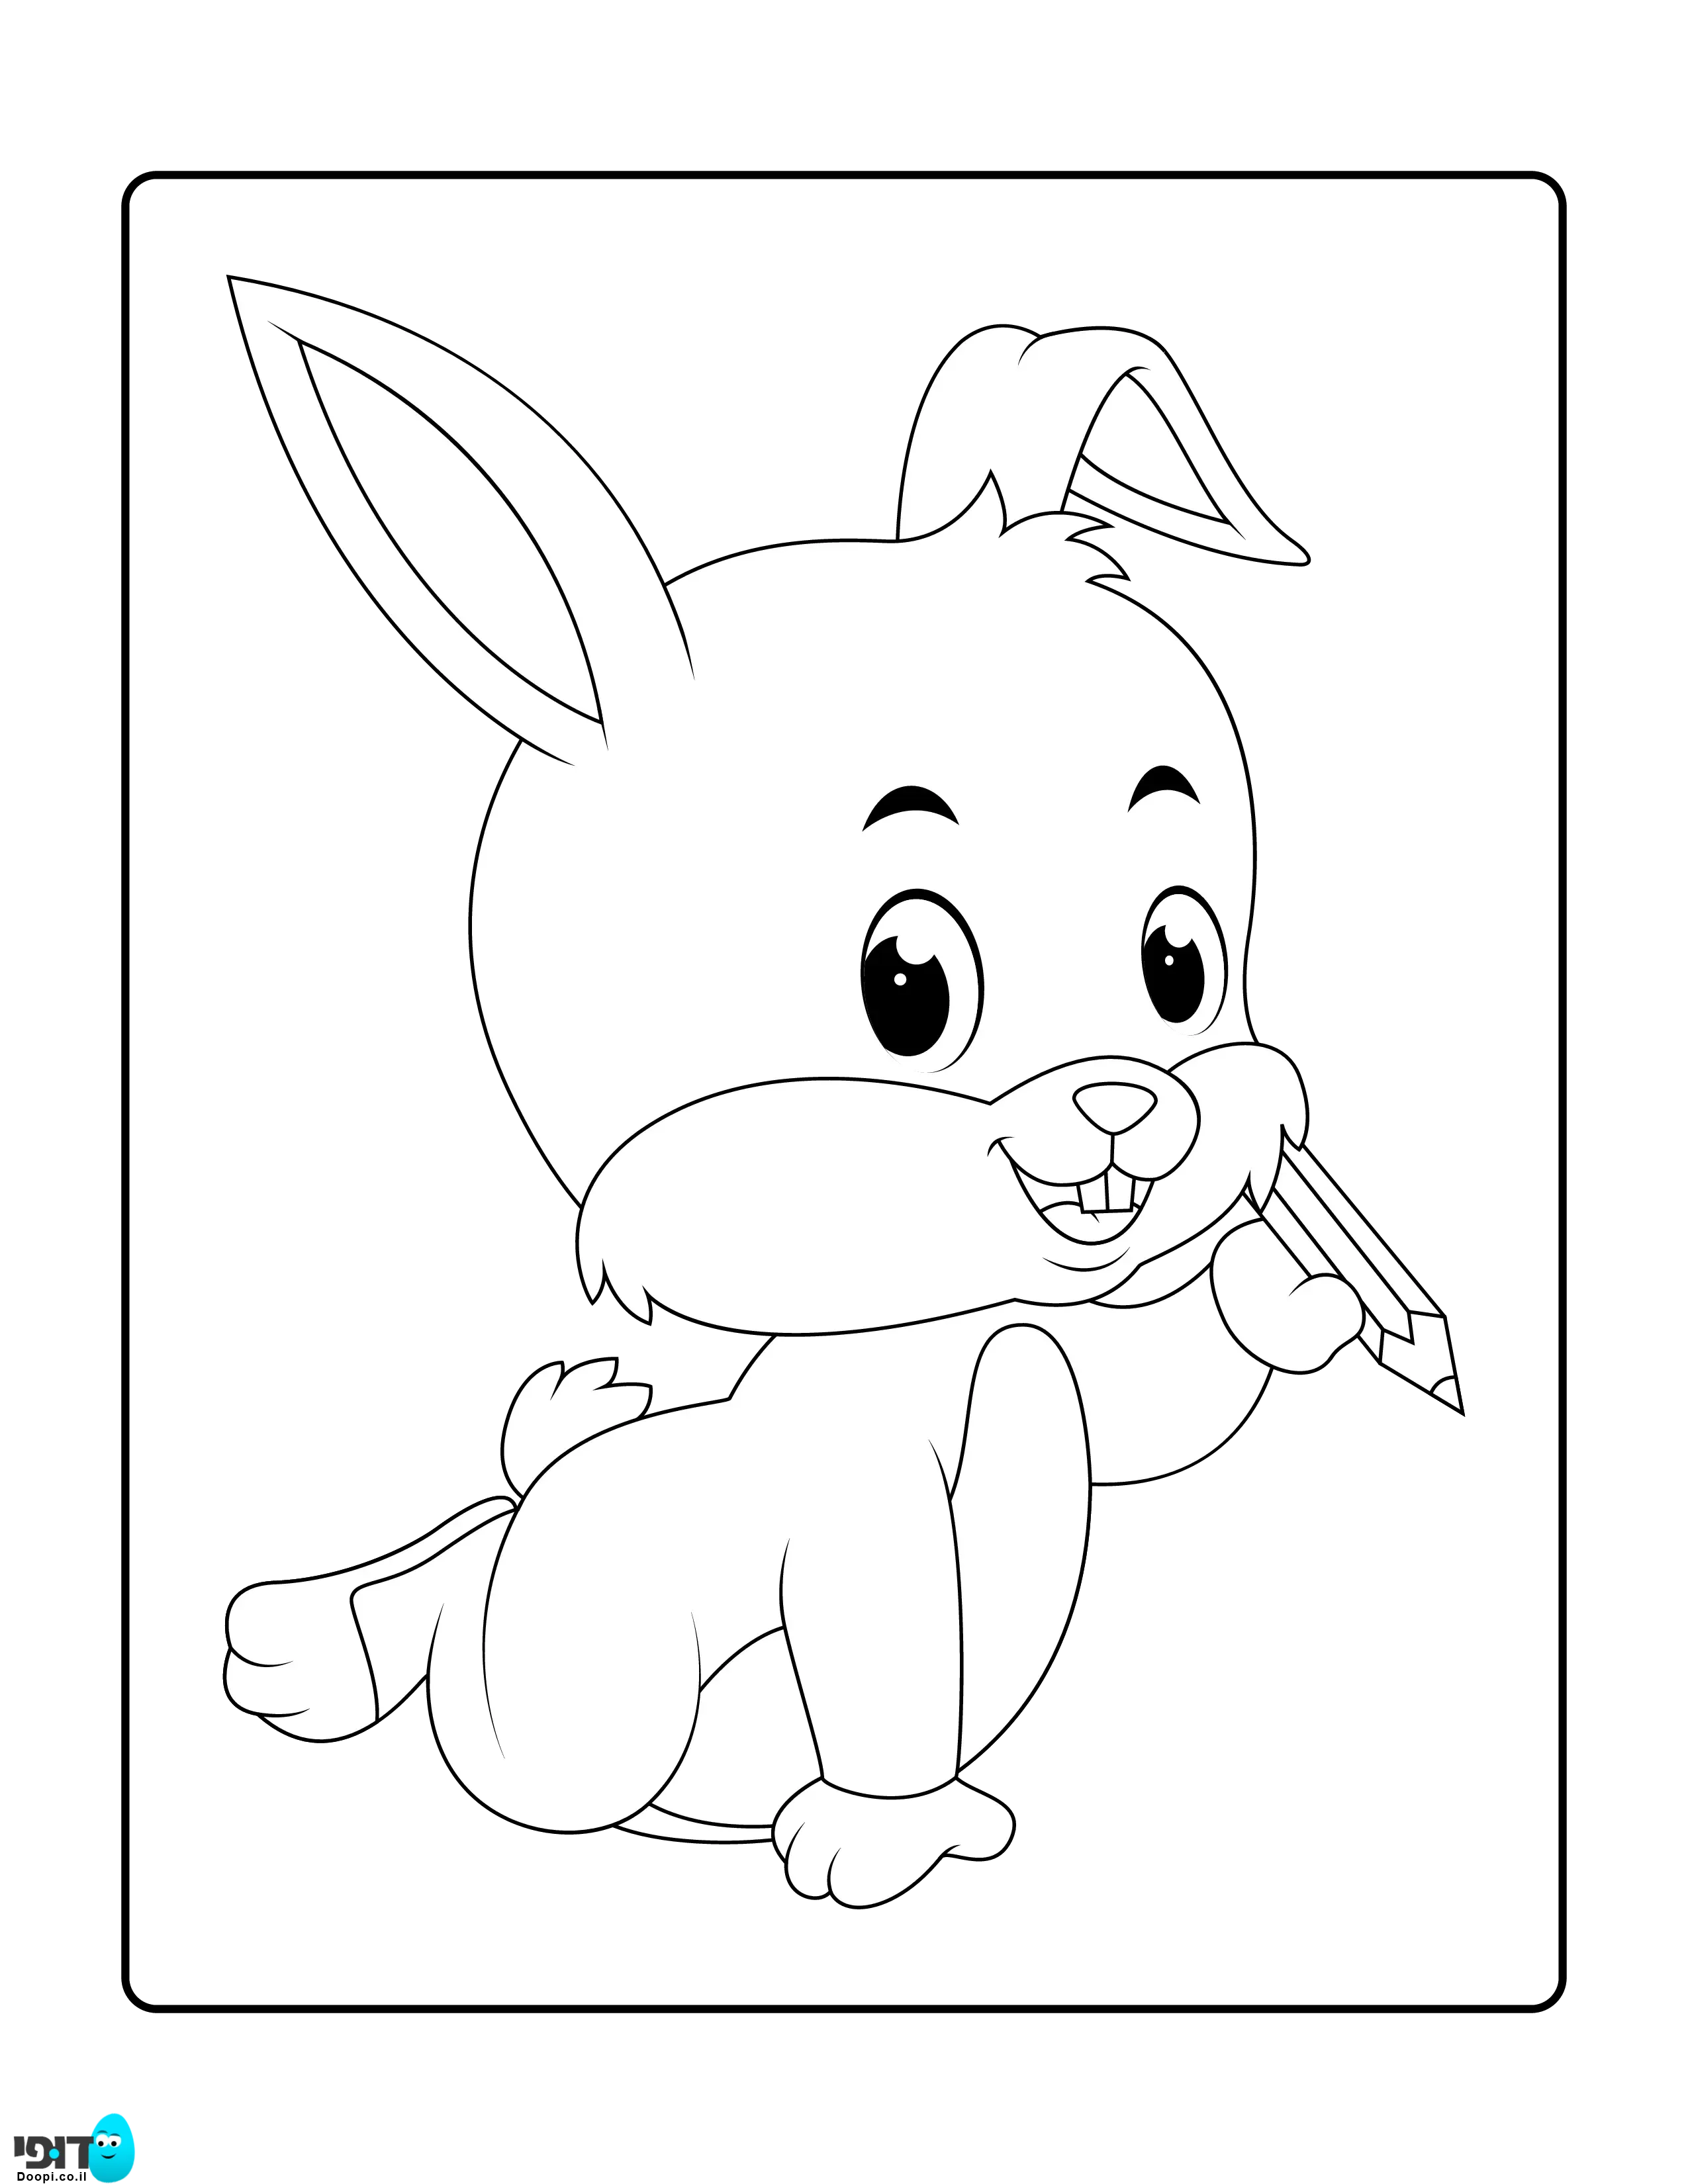 דף צביעה ארנב קטן וחמוד